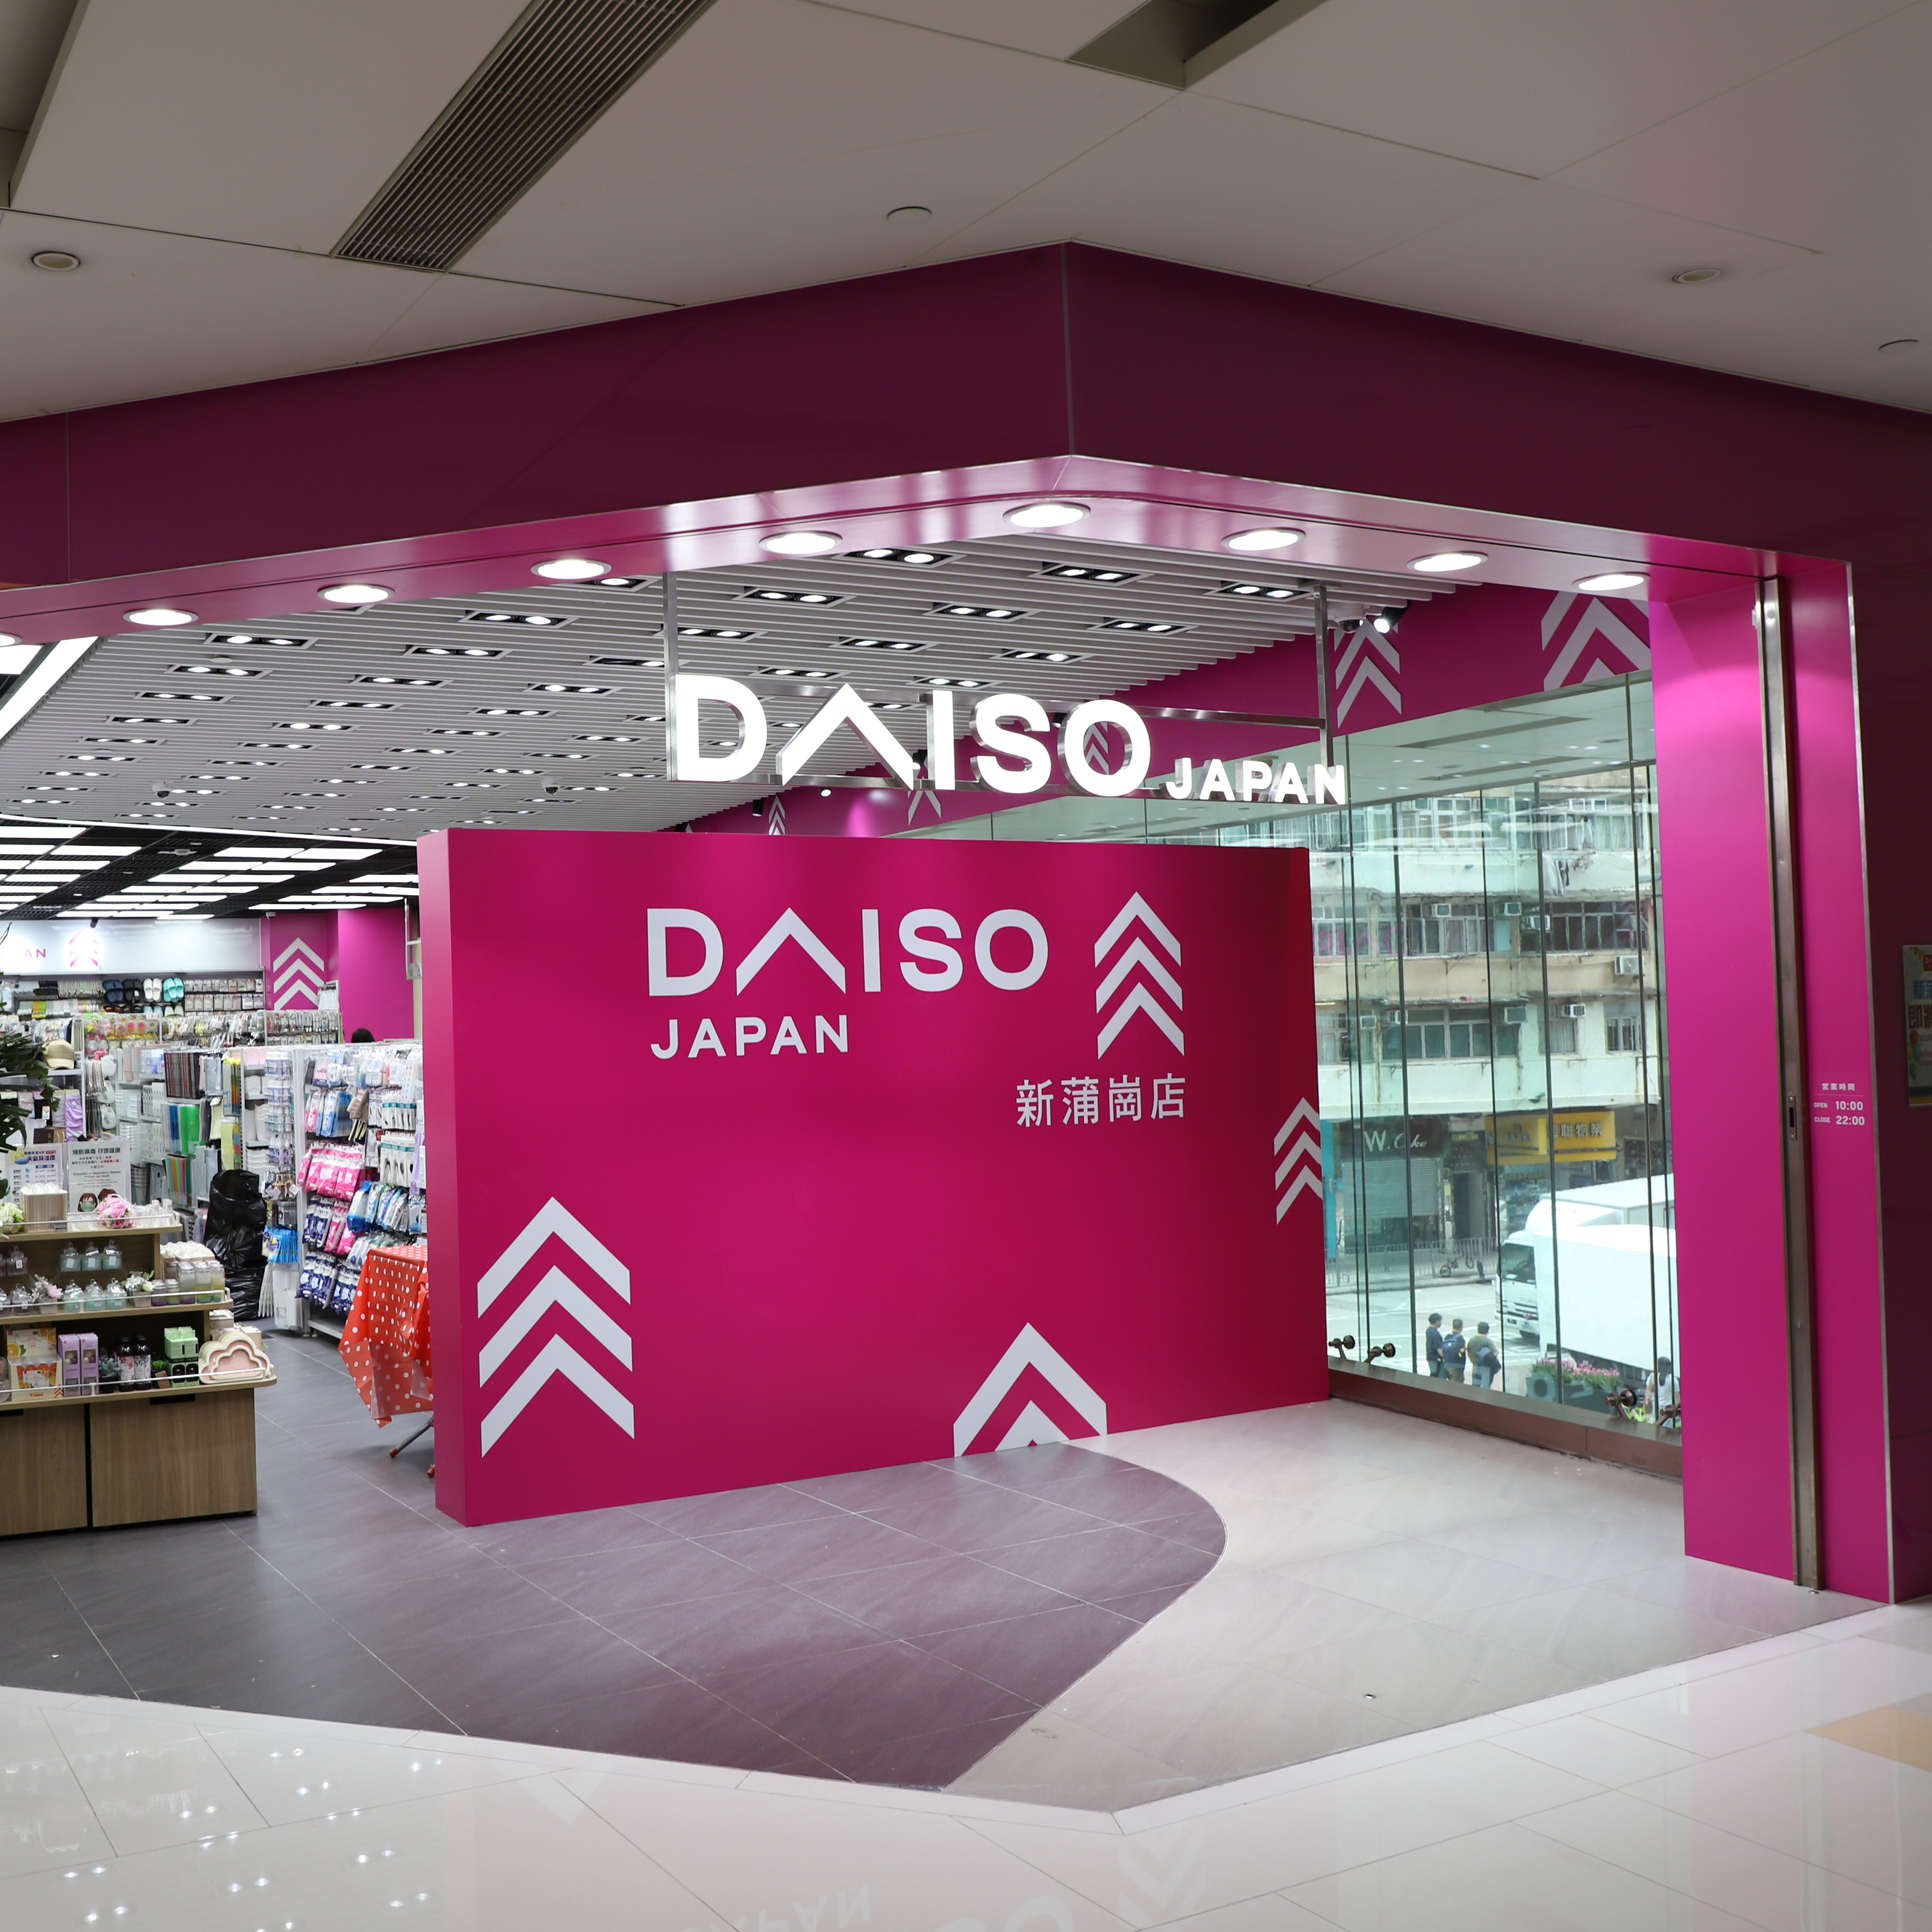 Daiso Japan 新蒲岗店 